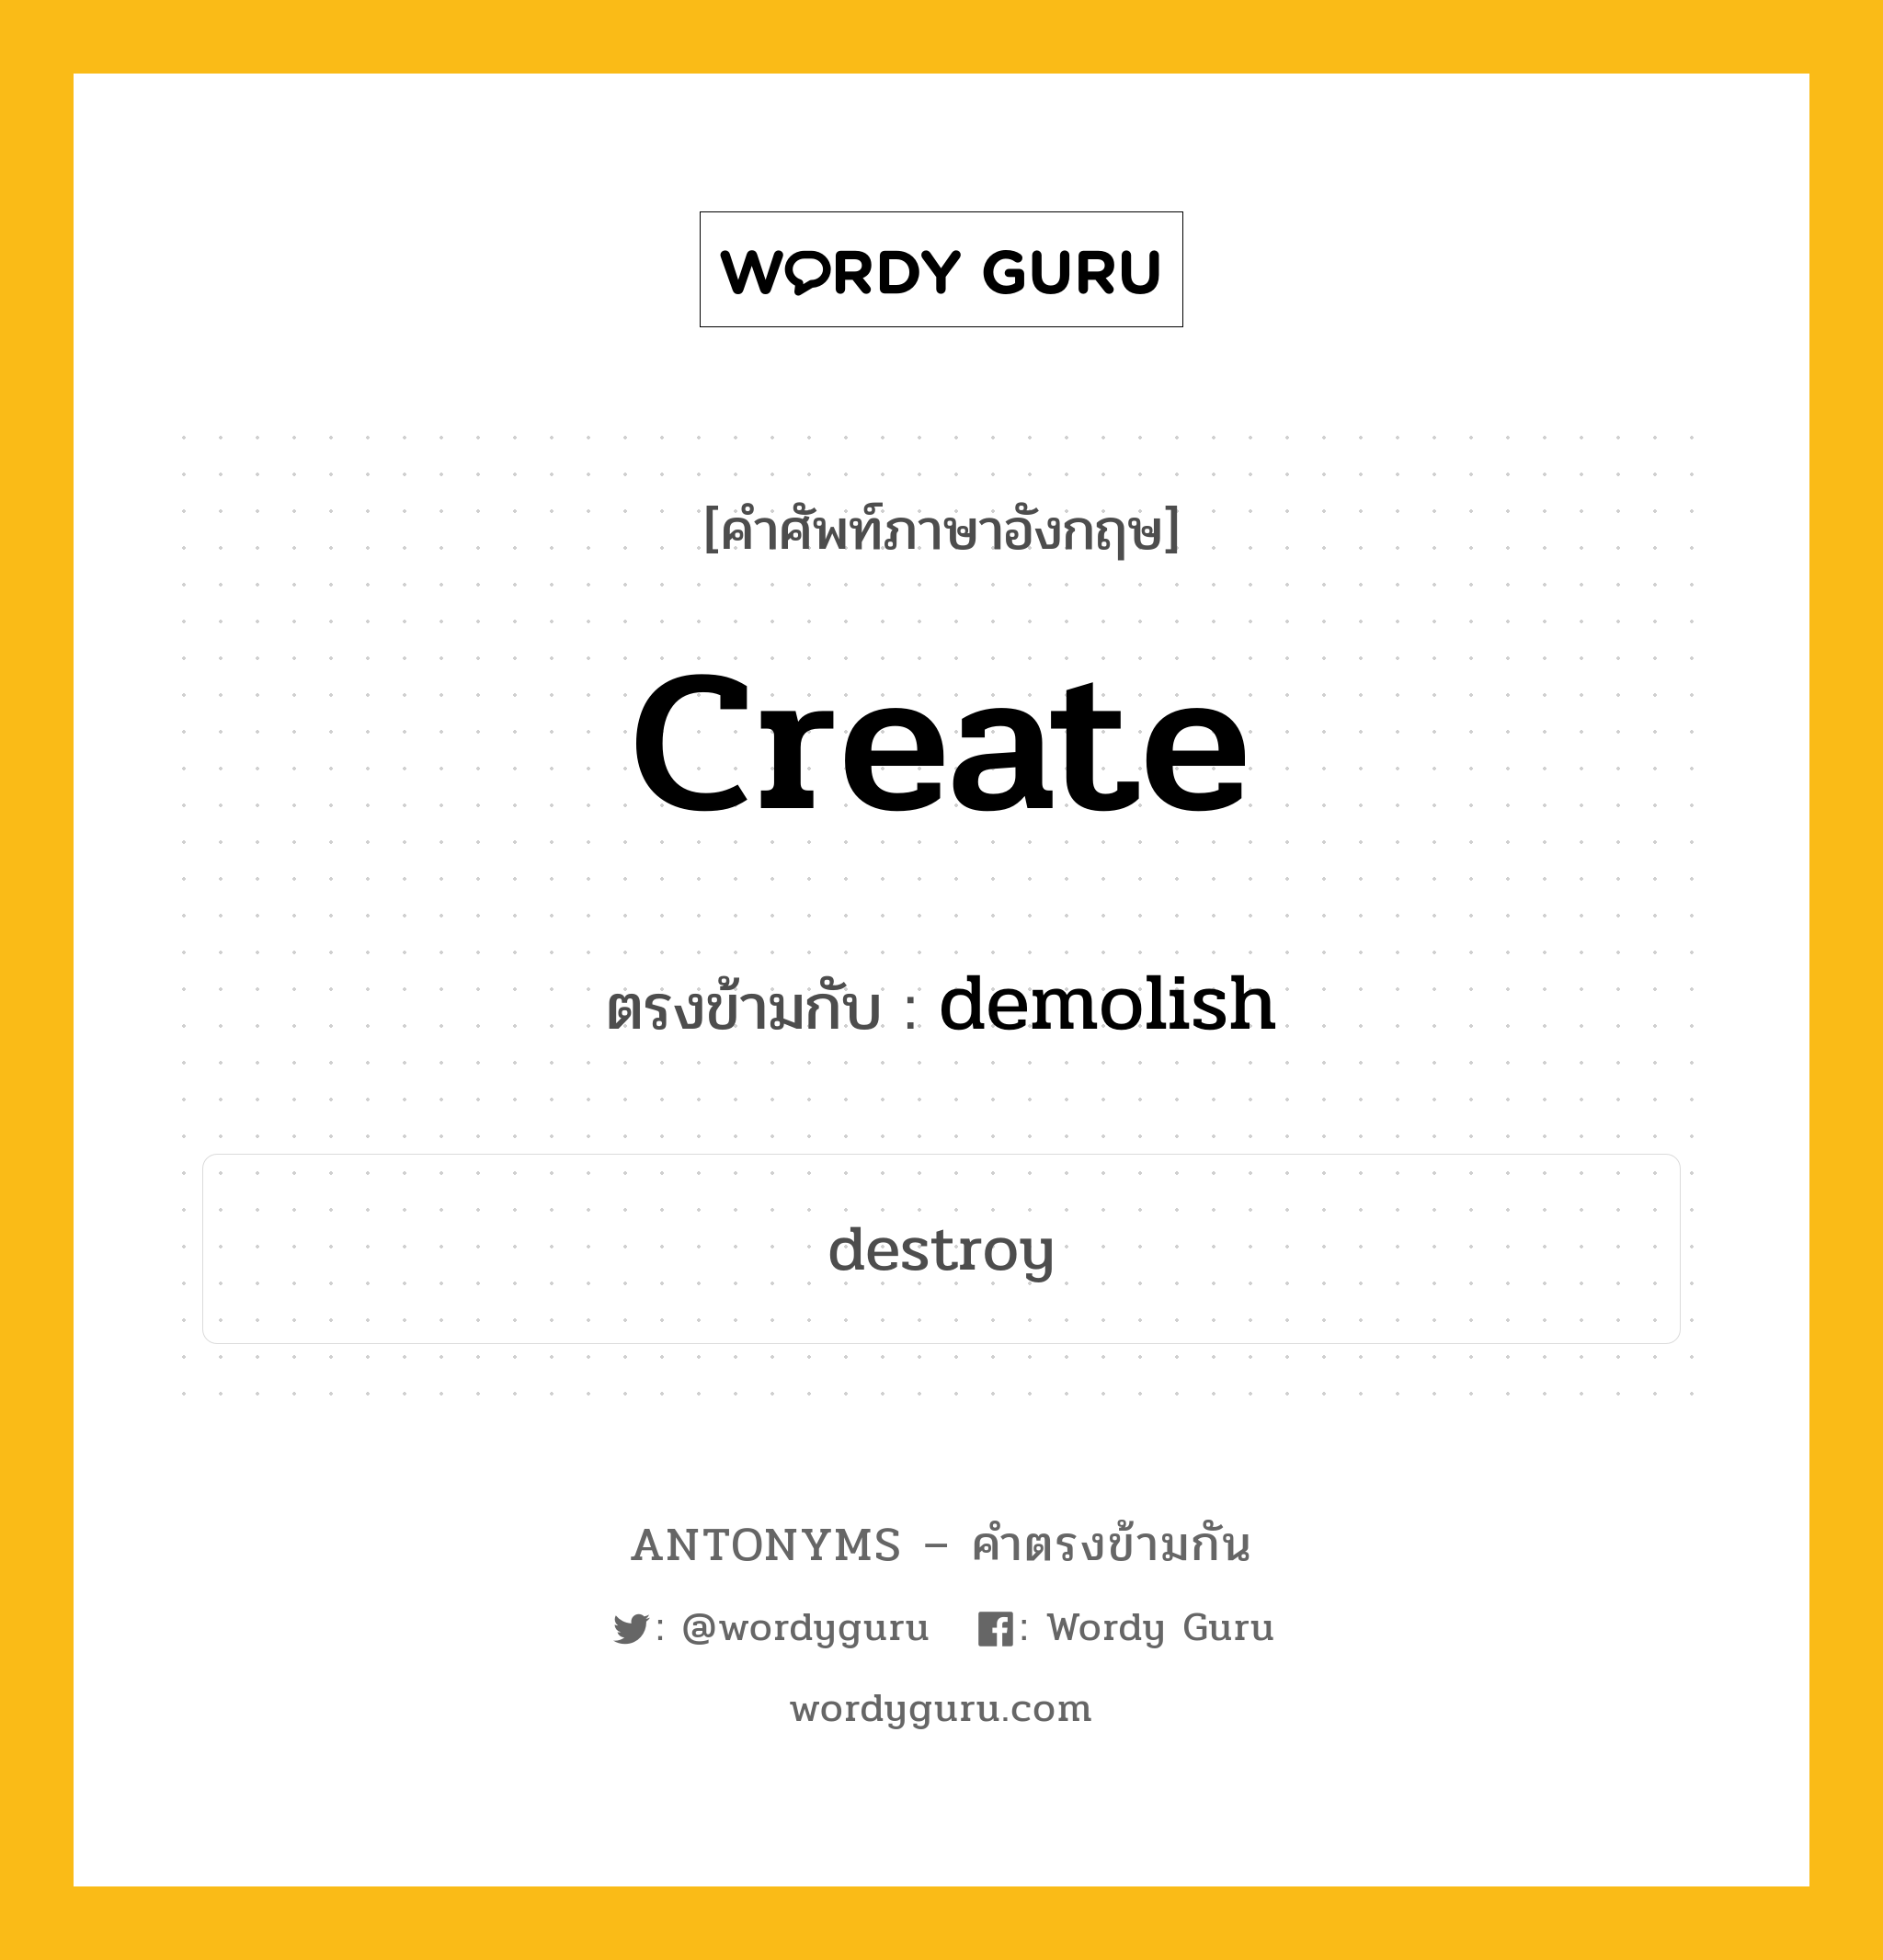 create เป็นคำตรงข้ามกับคำไหนบ้าง?, คำศัพท์ภาษาอังกฤษ create ตรงข้ามกับ demolish หมวด demolish